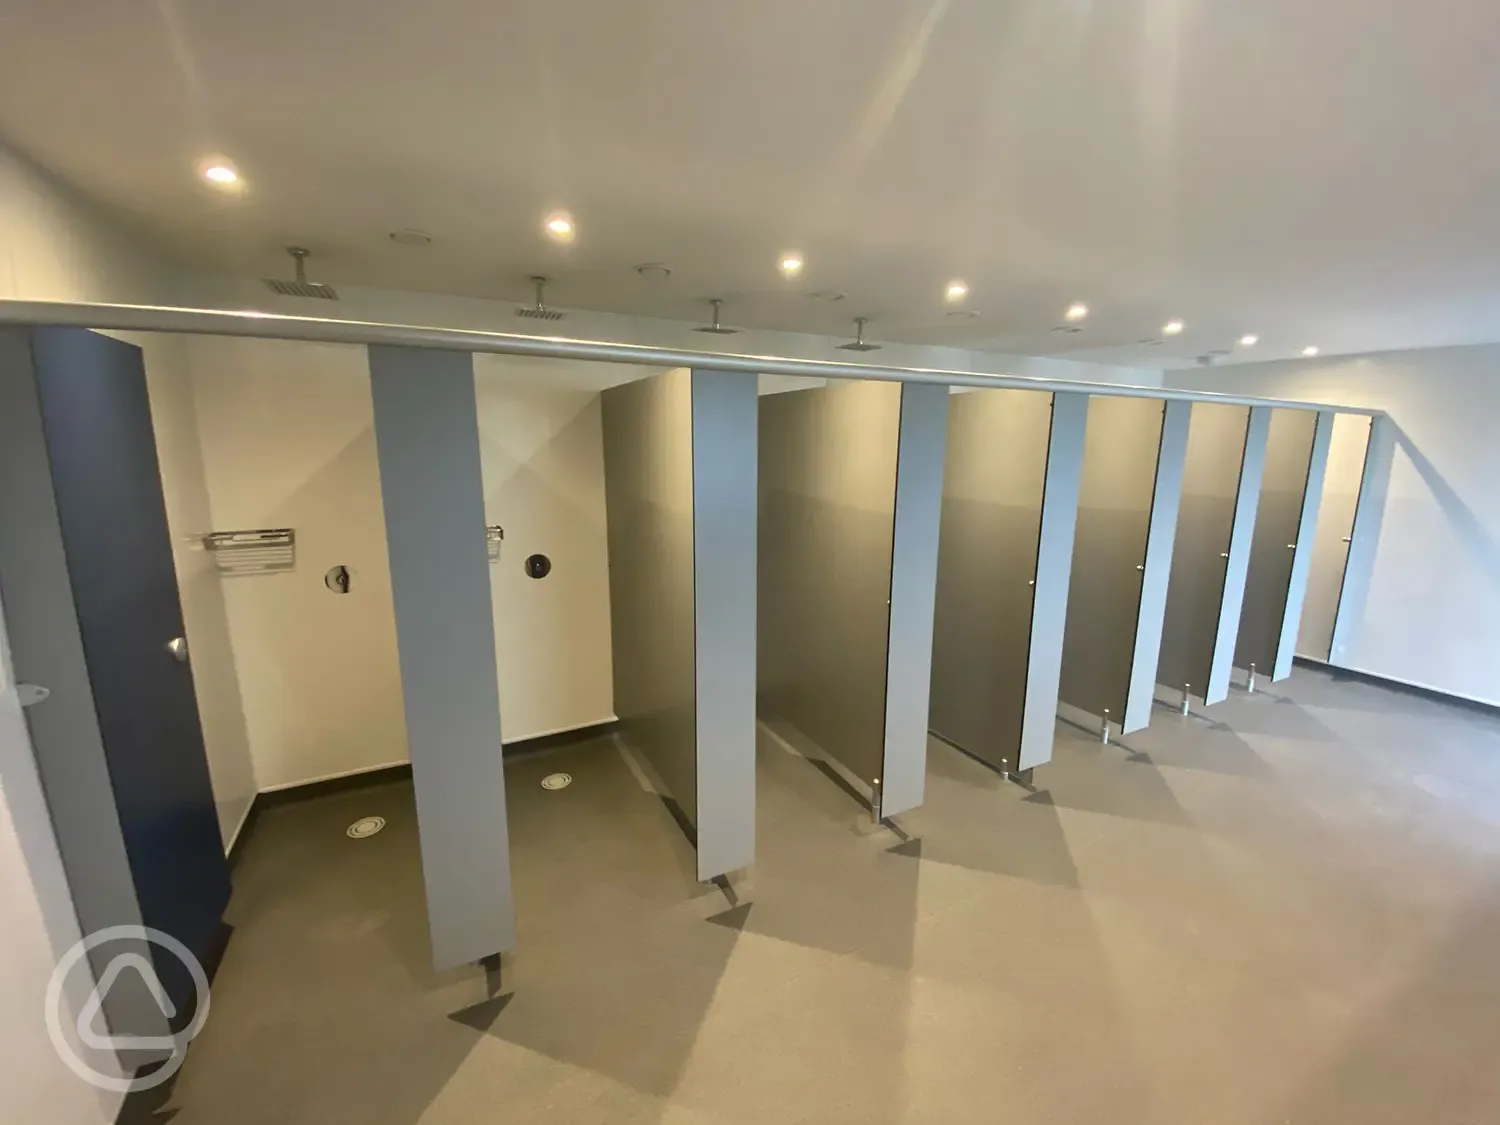 Campsite facilities - toilet block